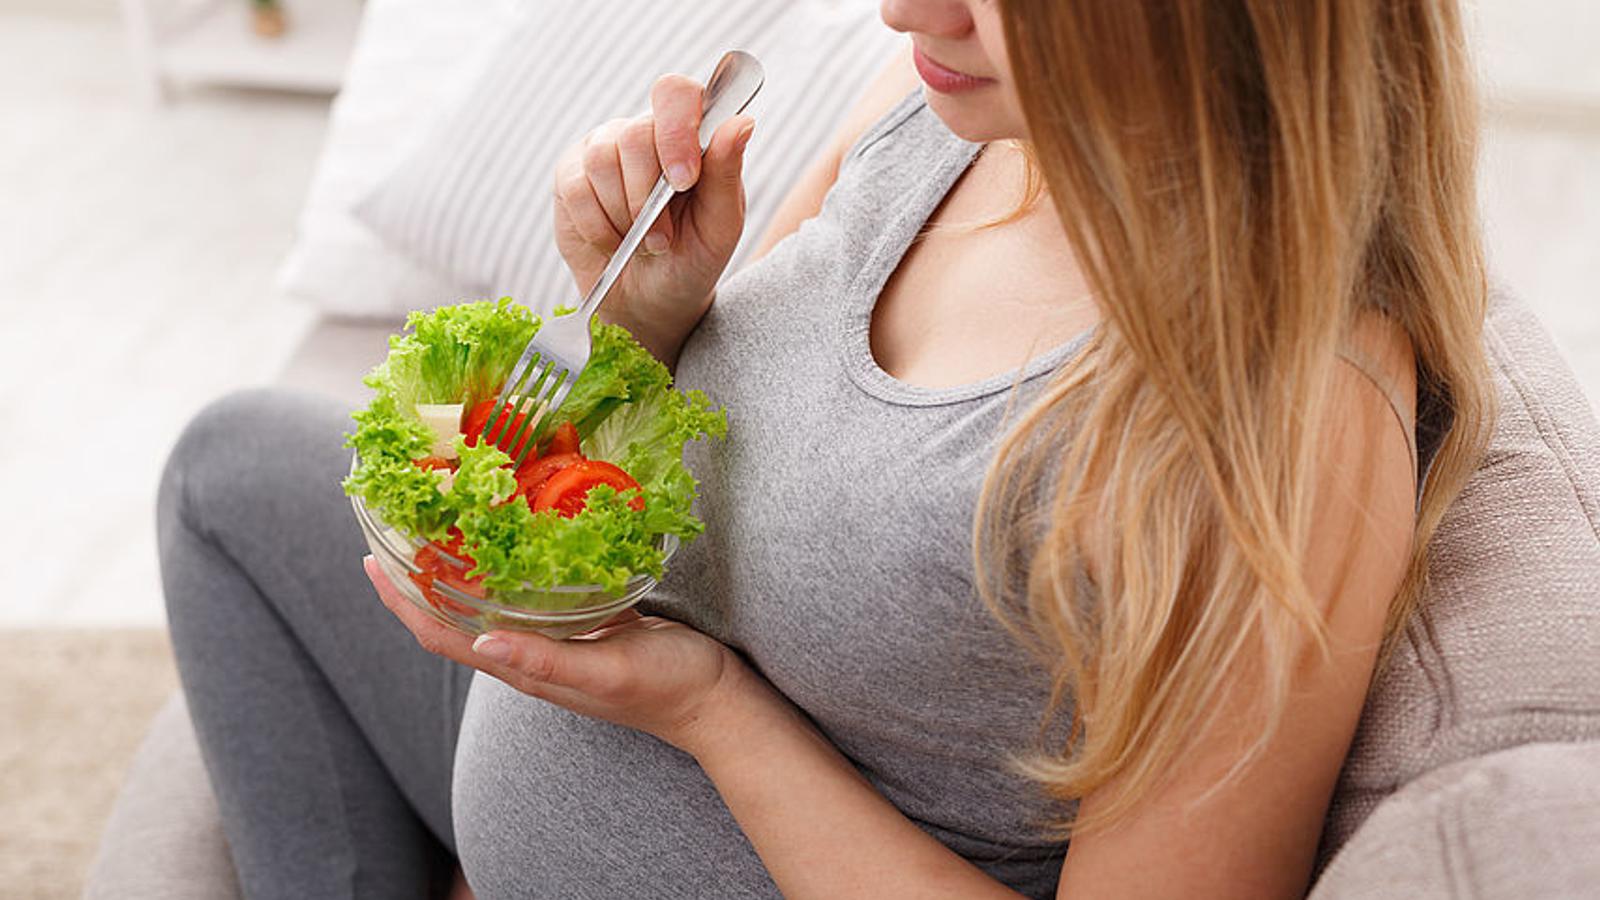 Schwangere Frau isst einen Salat